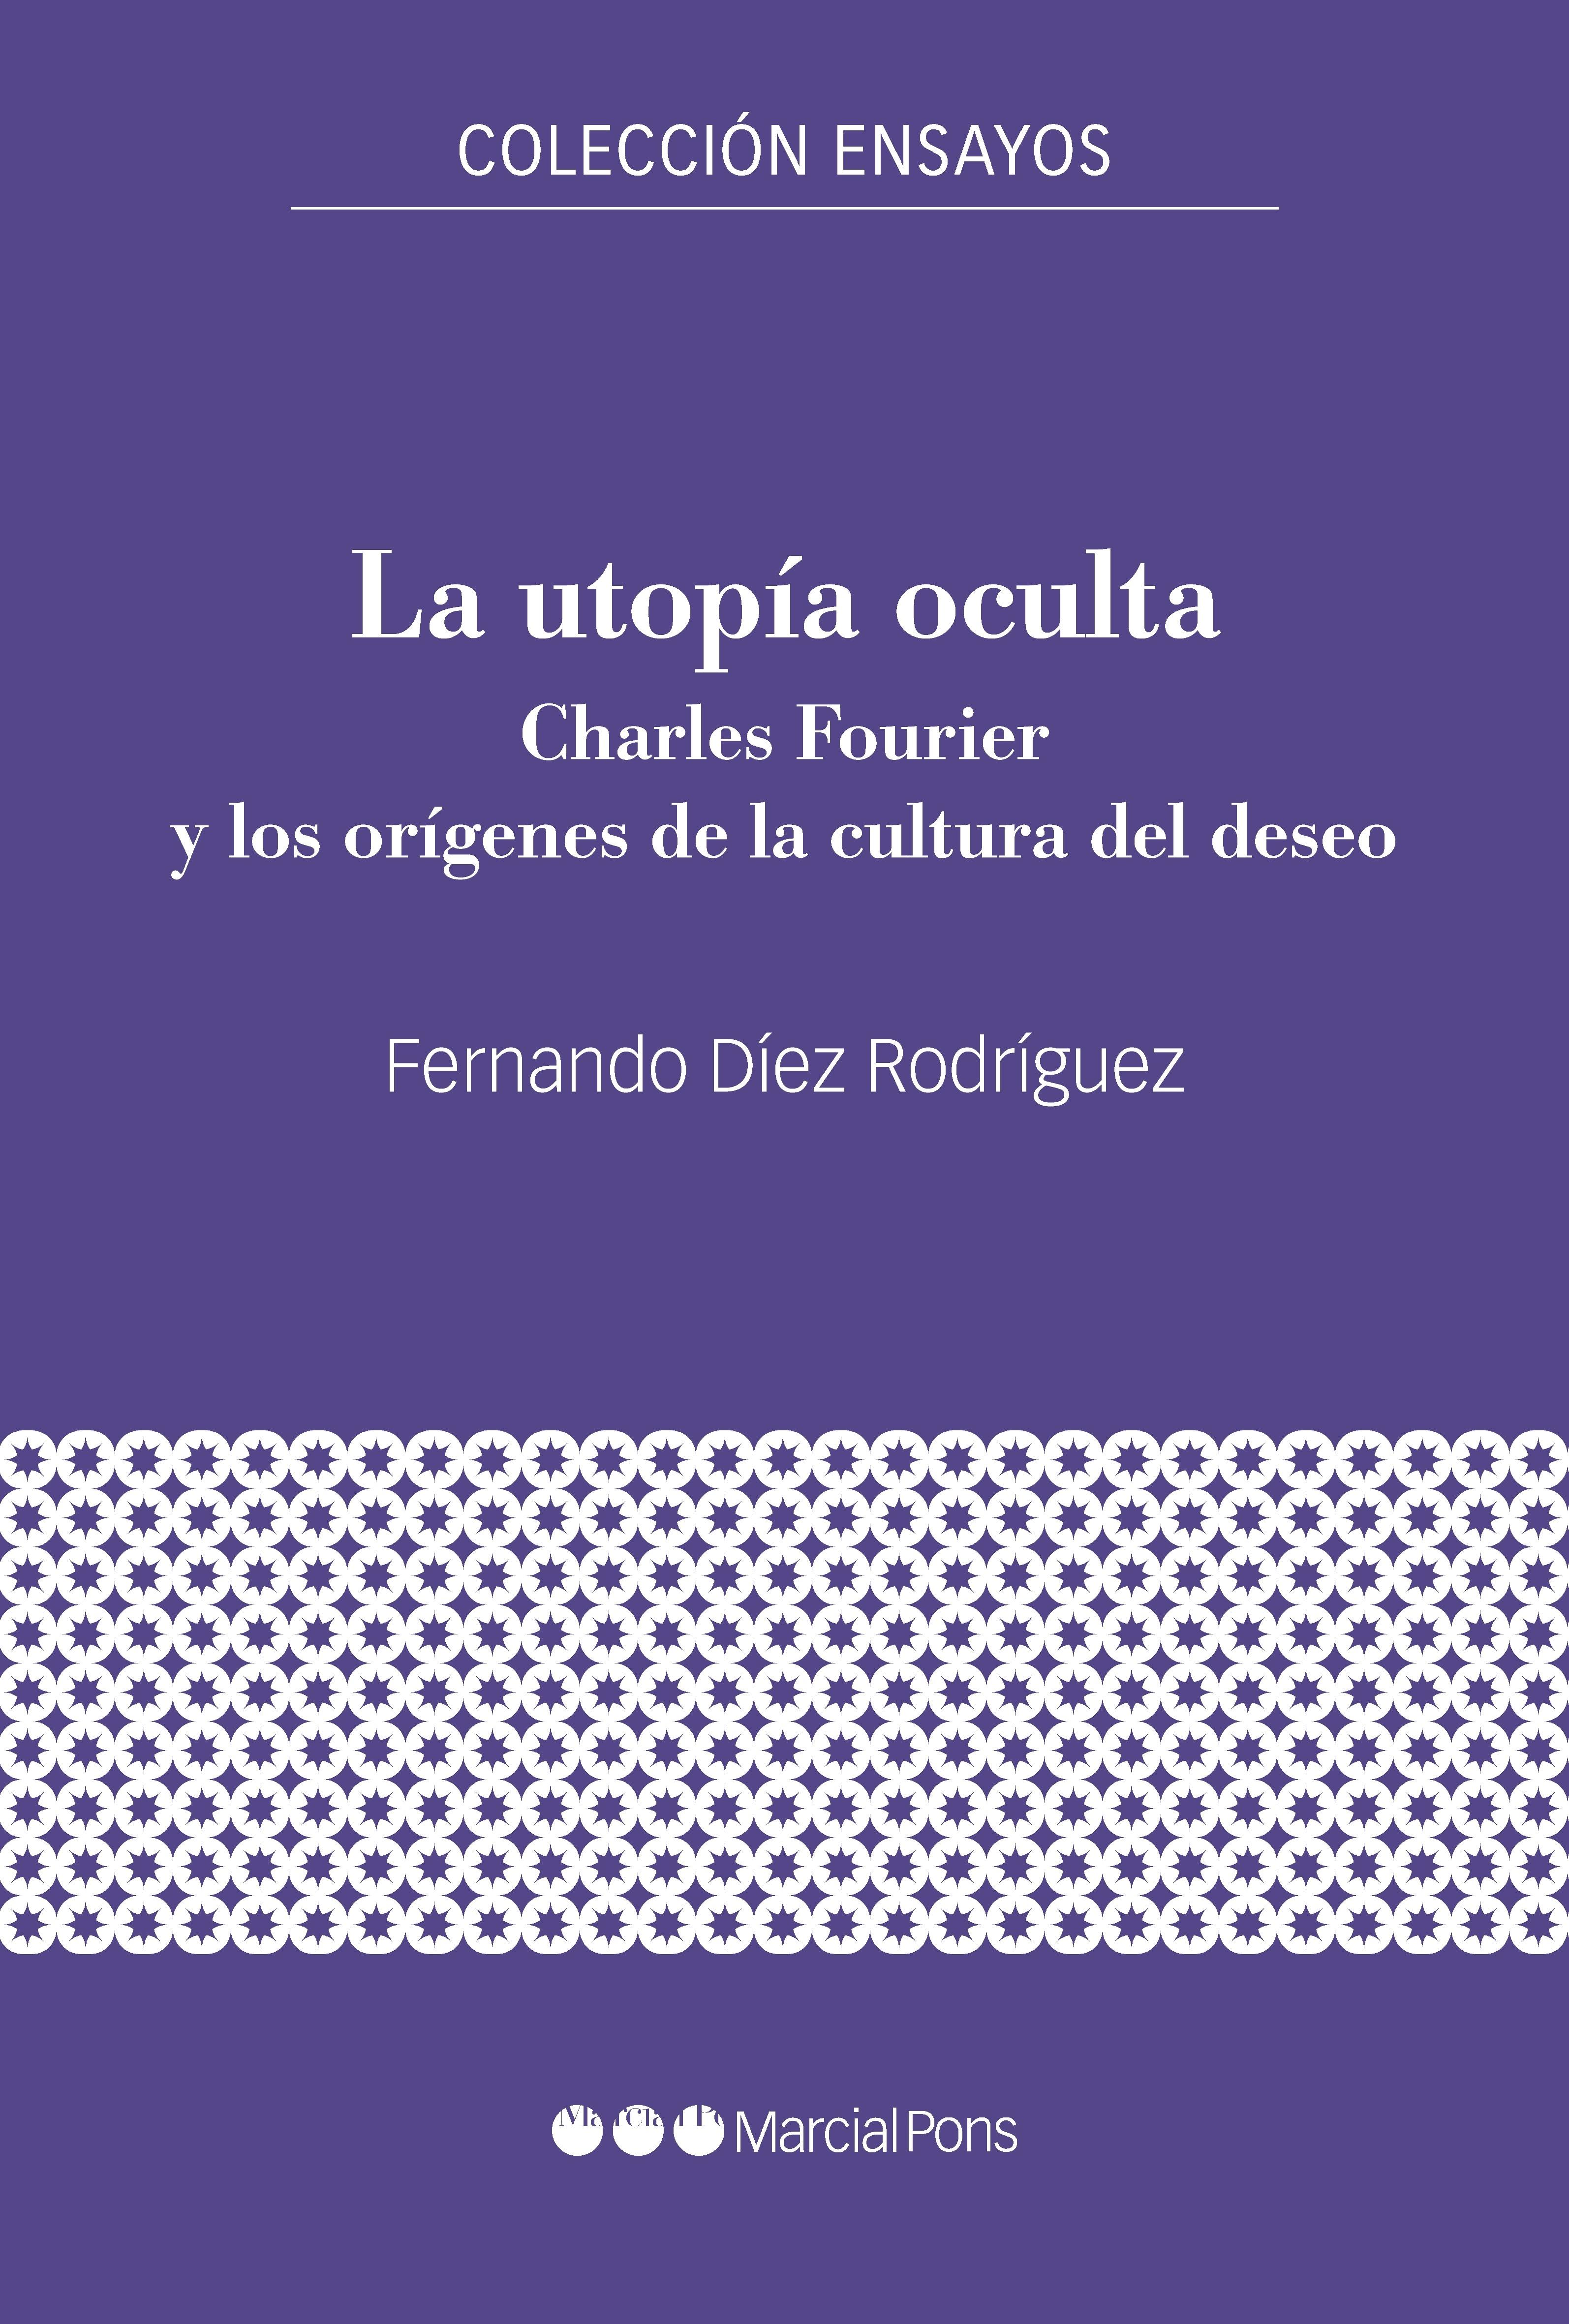 La utopía oculta "Charles Fourier y los orígenes de la cultura del deseo"